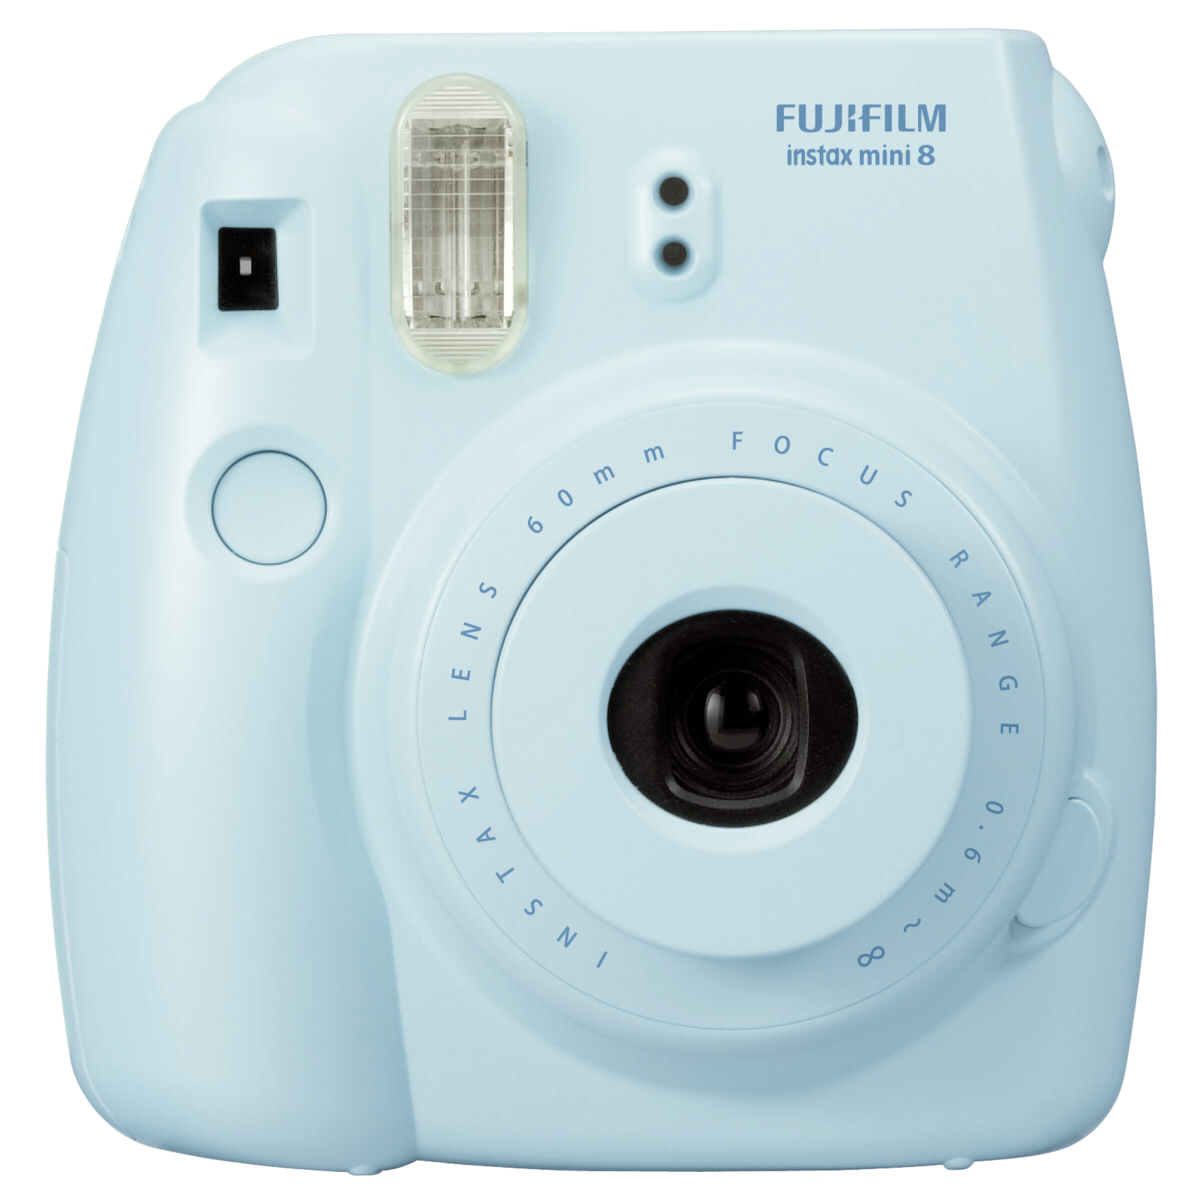 Fujifilm Instax Mini 8 Blue